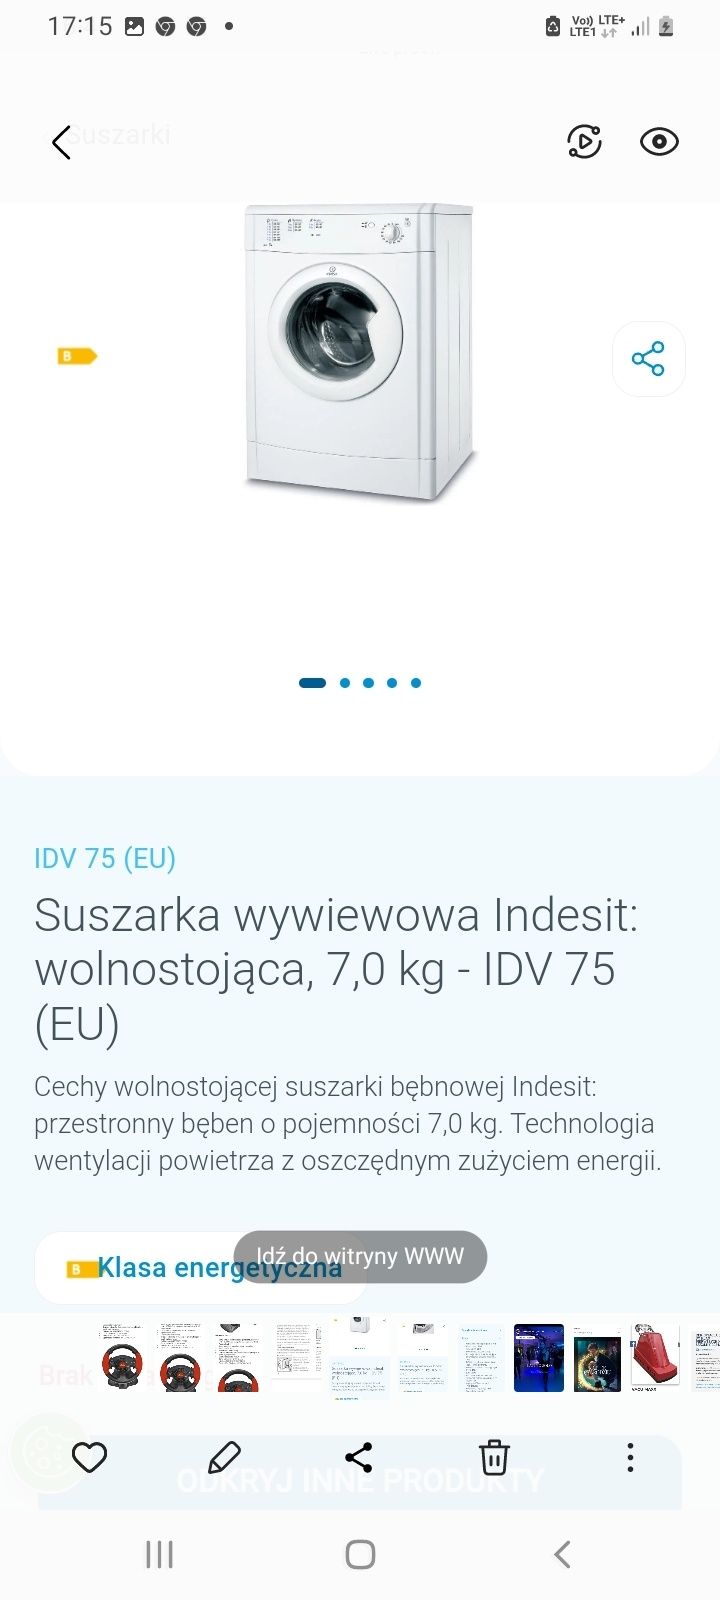 Suszarka wywiewowa Indesit: wolnostojąca, 7,0 kg - IDV 75 (EU)